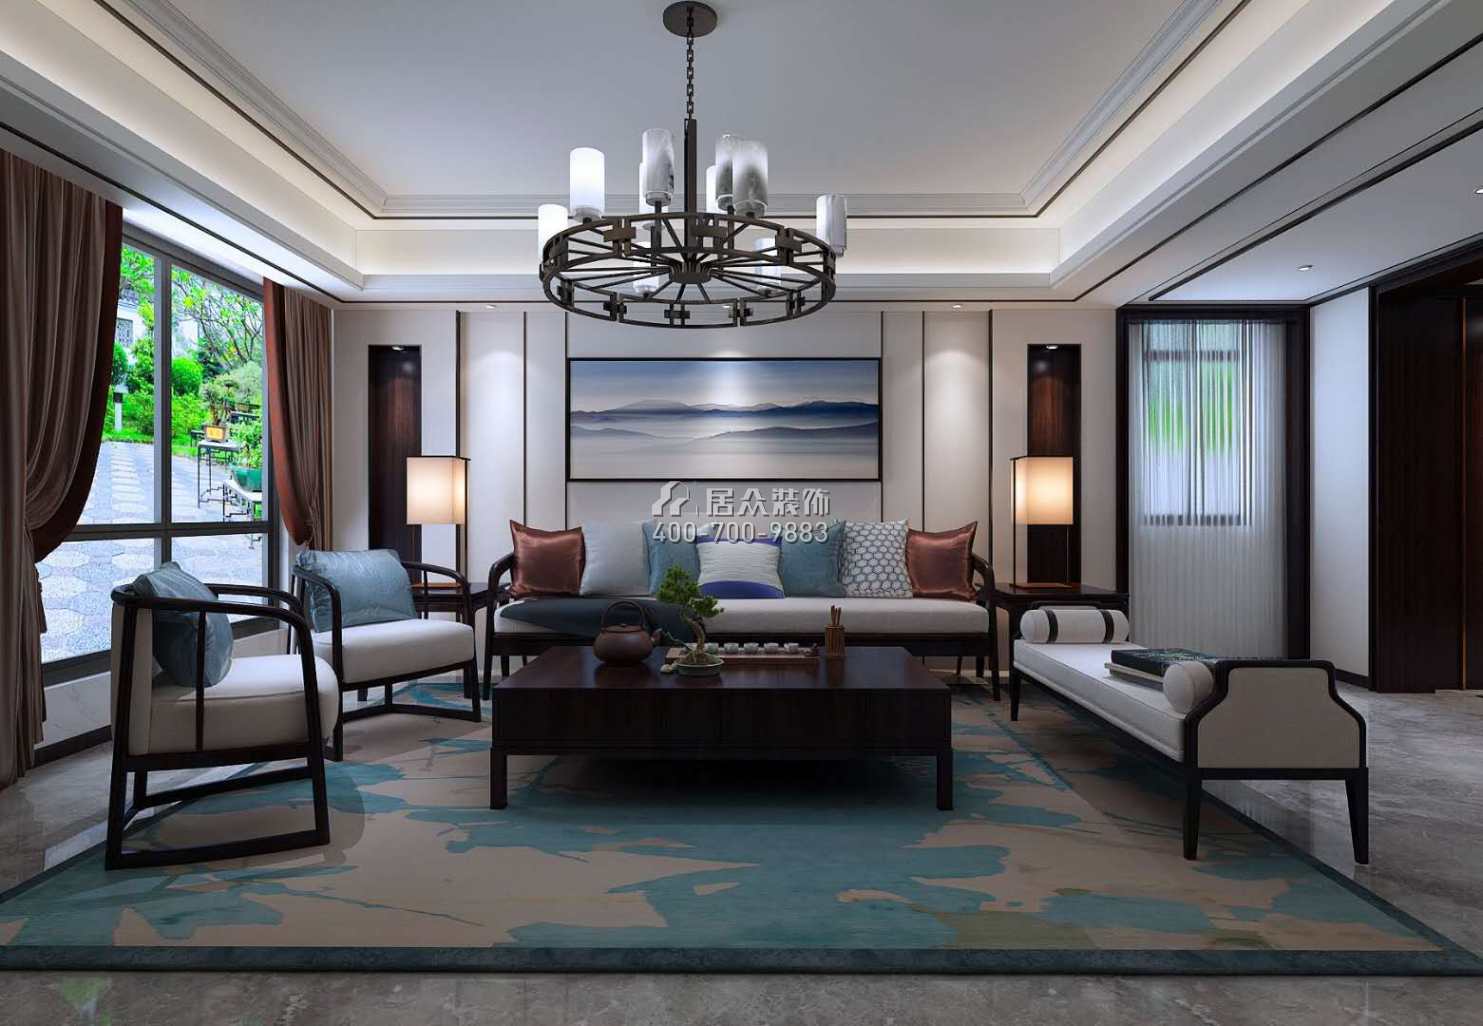 龙吟水榭500平方米中式风格别墅户型客厅装修效果图